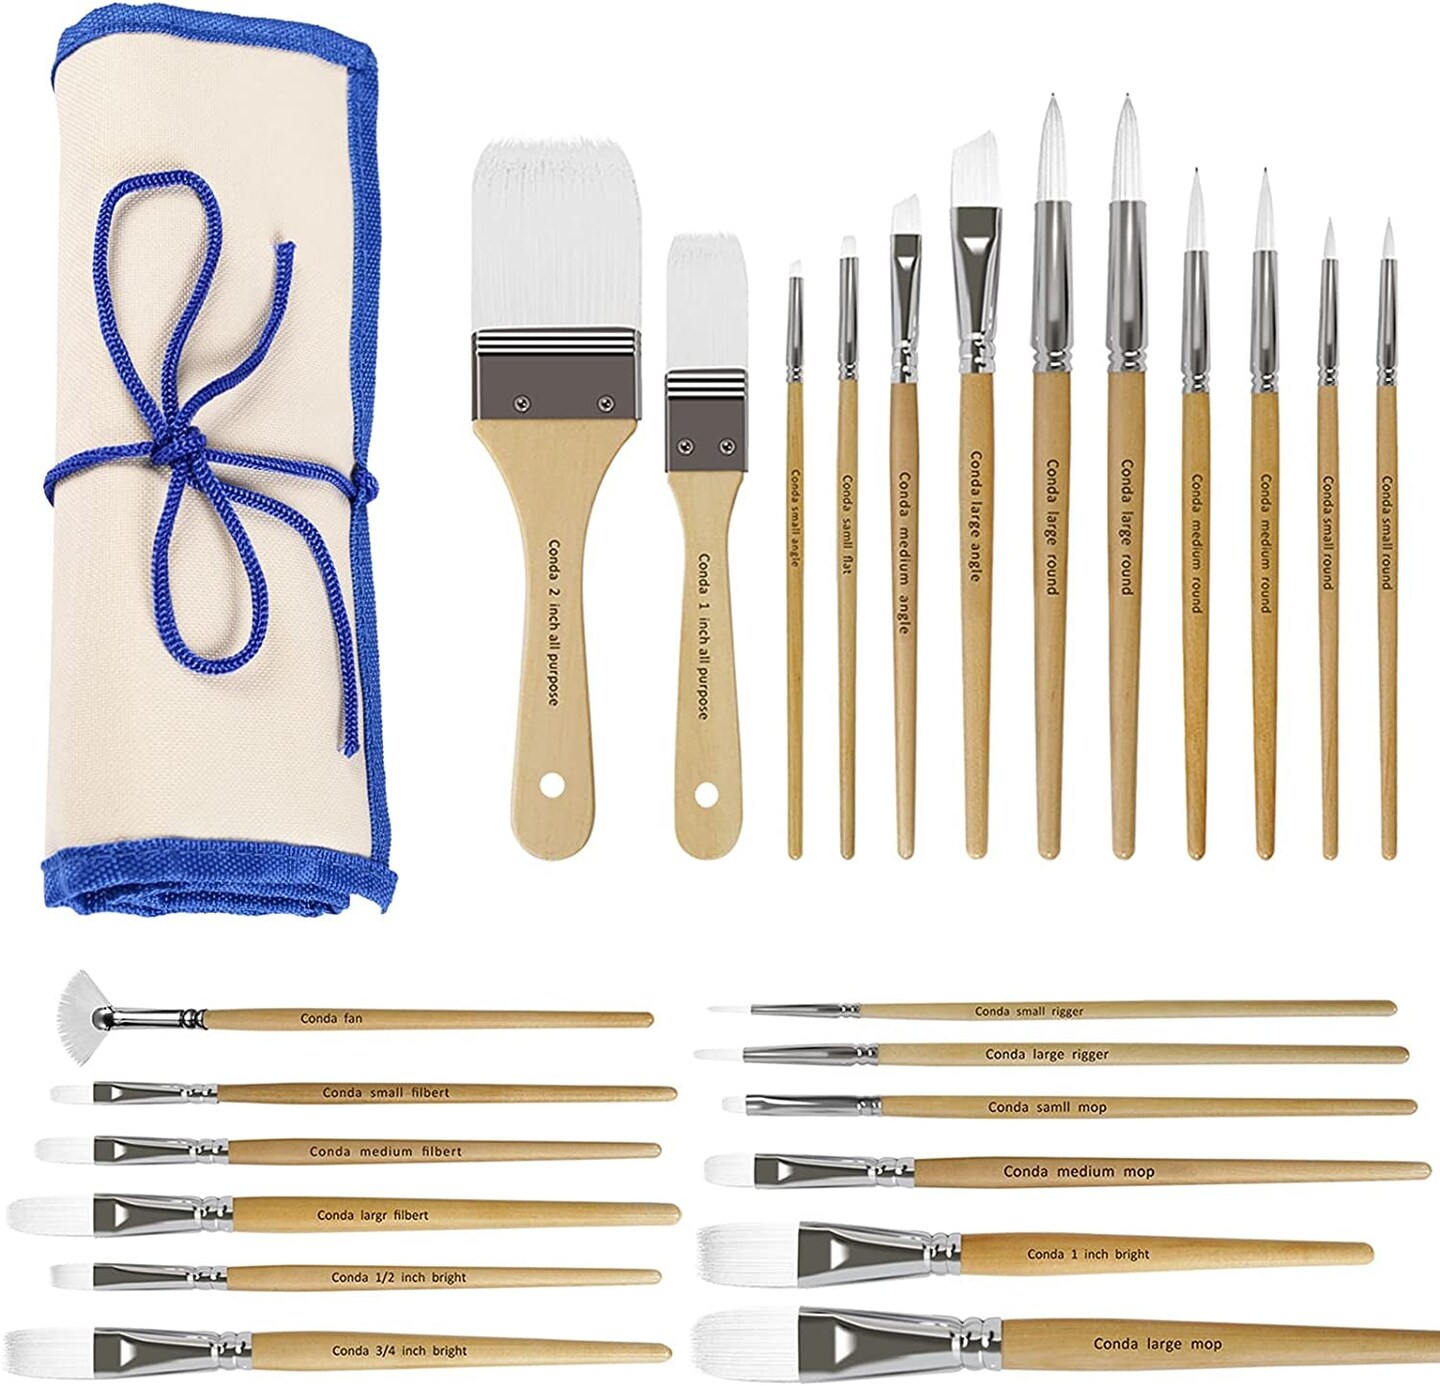 24 Pcs Professional Paint Brush Set, Acrylic Paint Brushes With